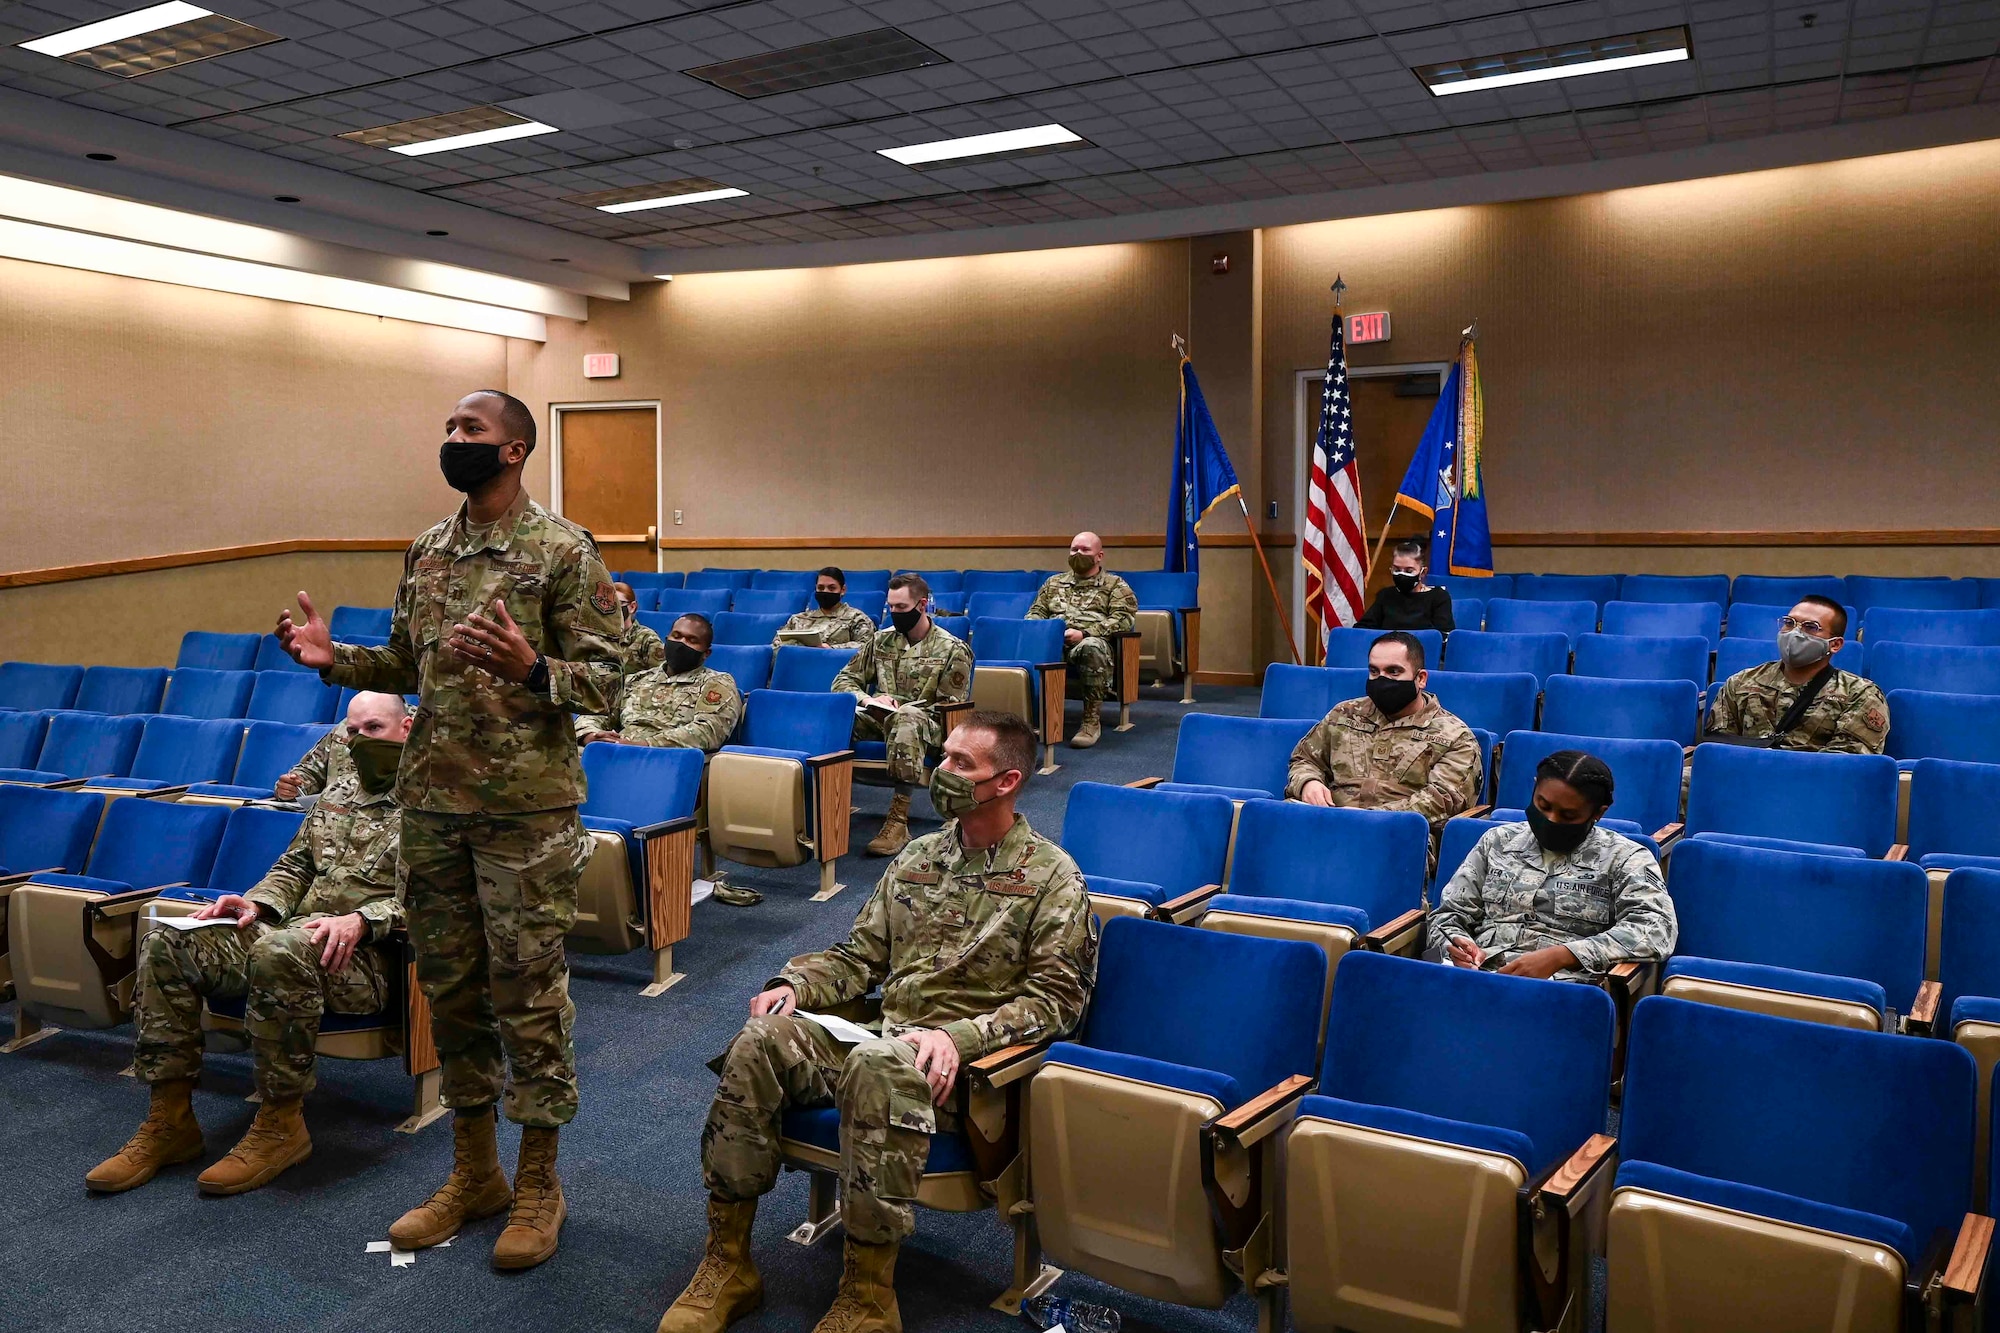 Airmen sitting in an auditorium listening to a speaker